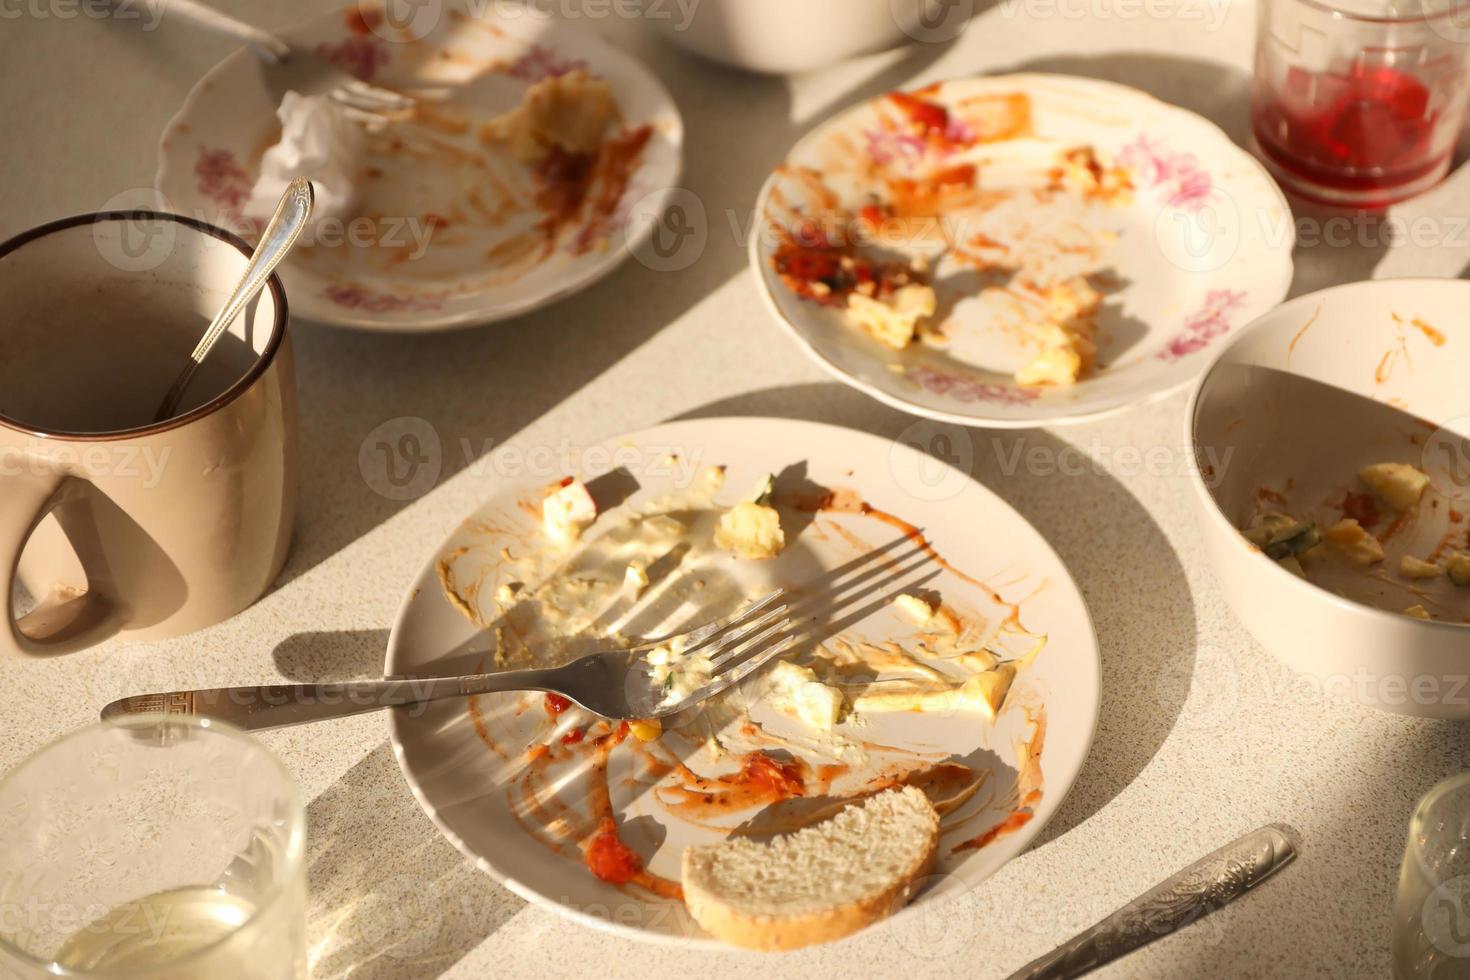 pratos sujos vazios com colheres e garfos na mesa após a refeição. conceito de final de banquete. pratos sujos foto